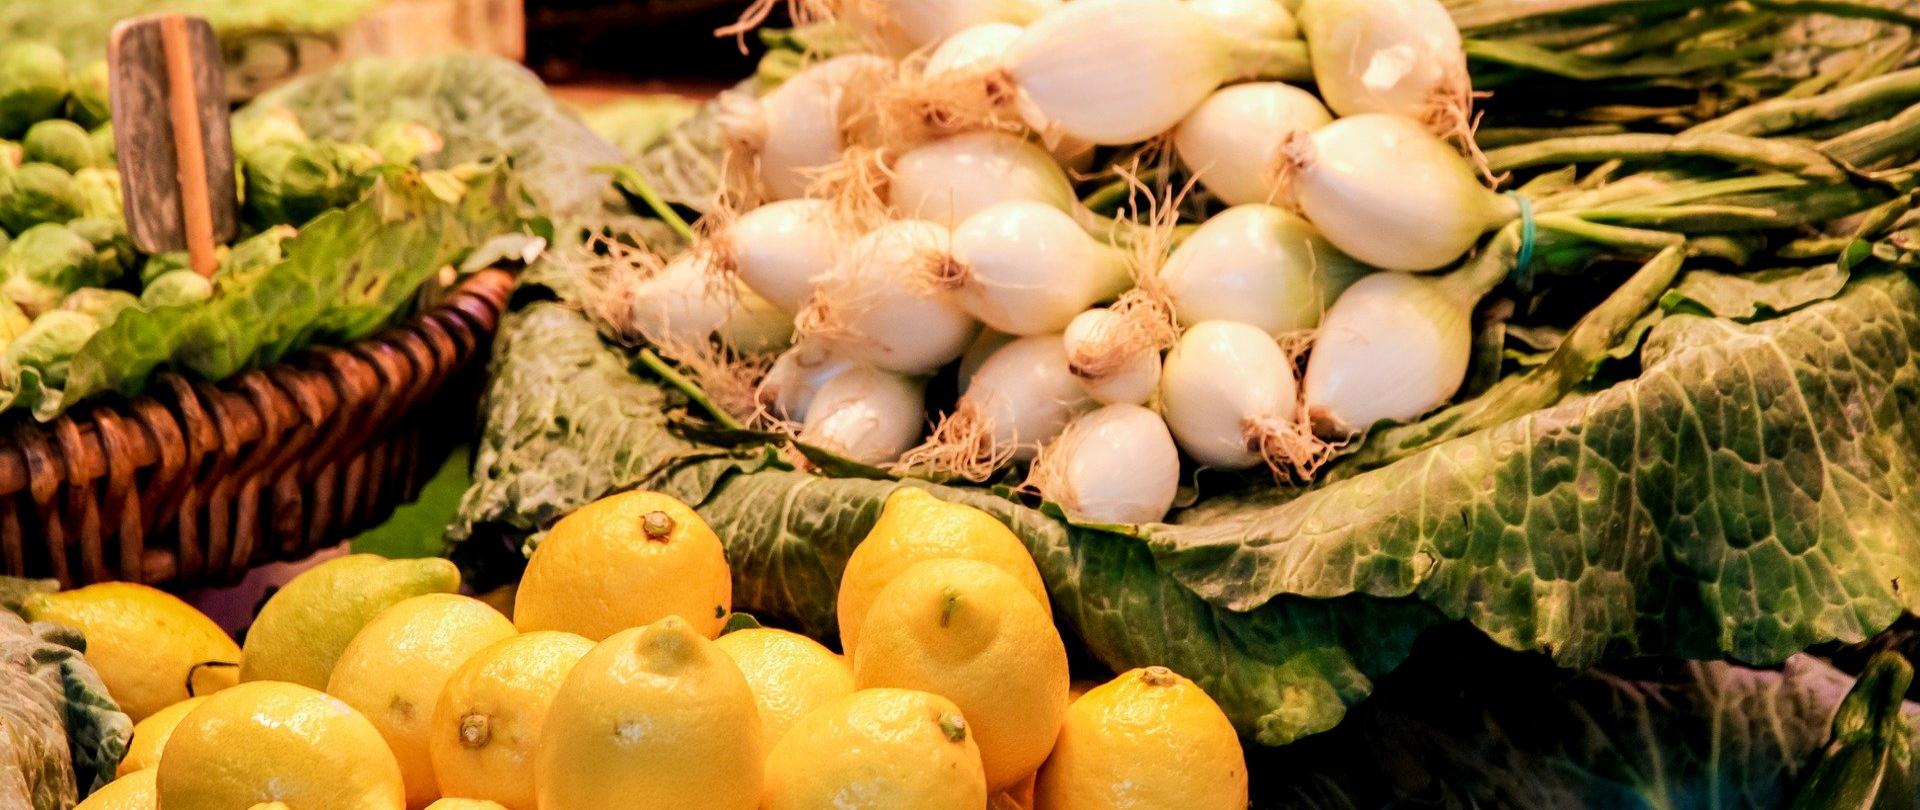 Zdjęcie przedstawia warzywa i owoce na targowisku. Warzywa i owoce ujęte na zdjęciu to cebula i cytryny.